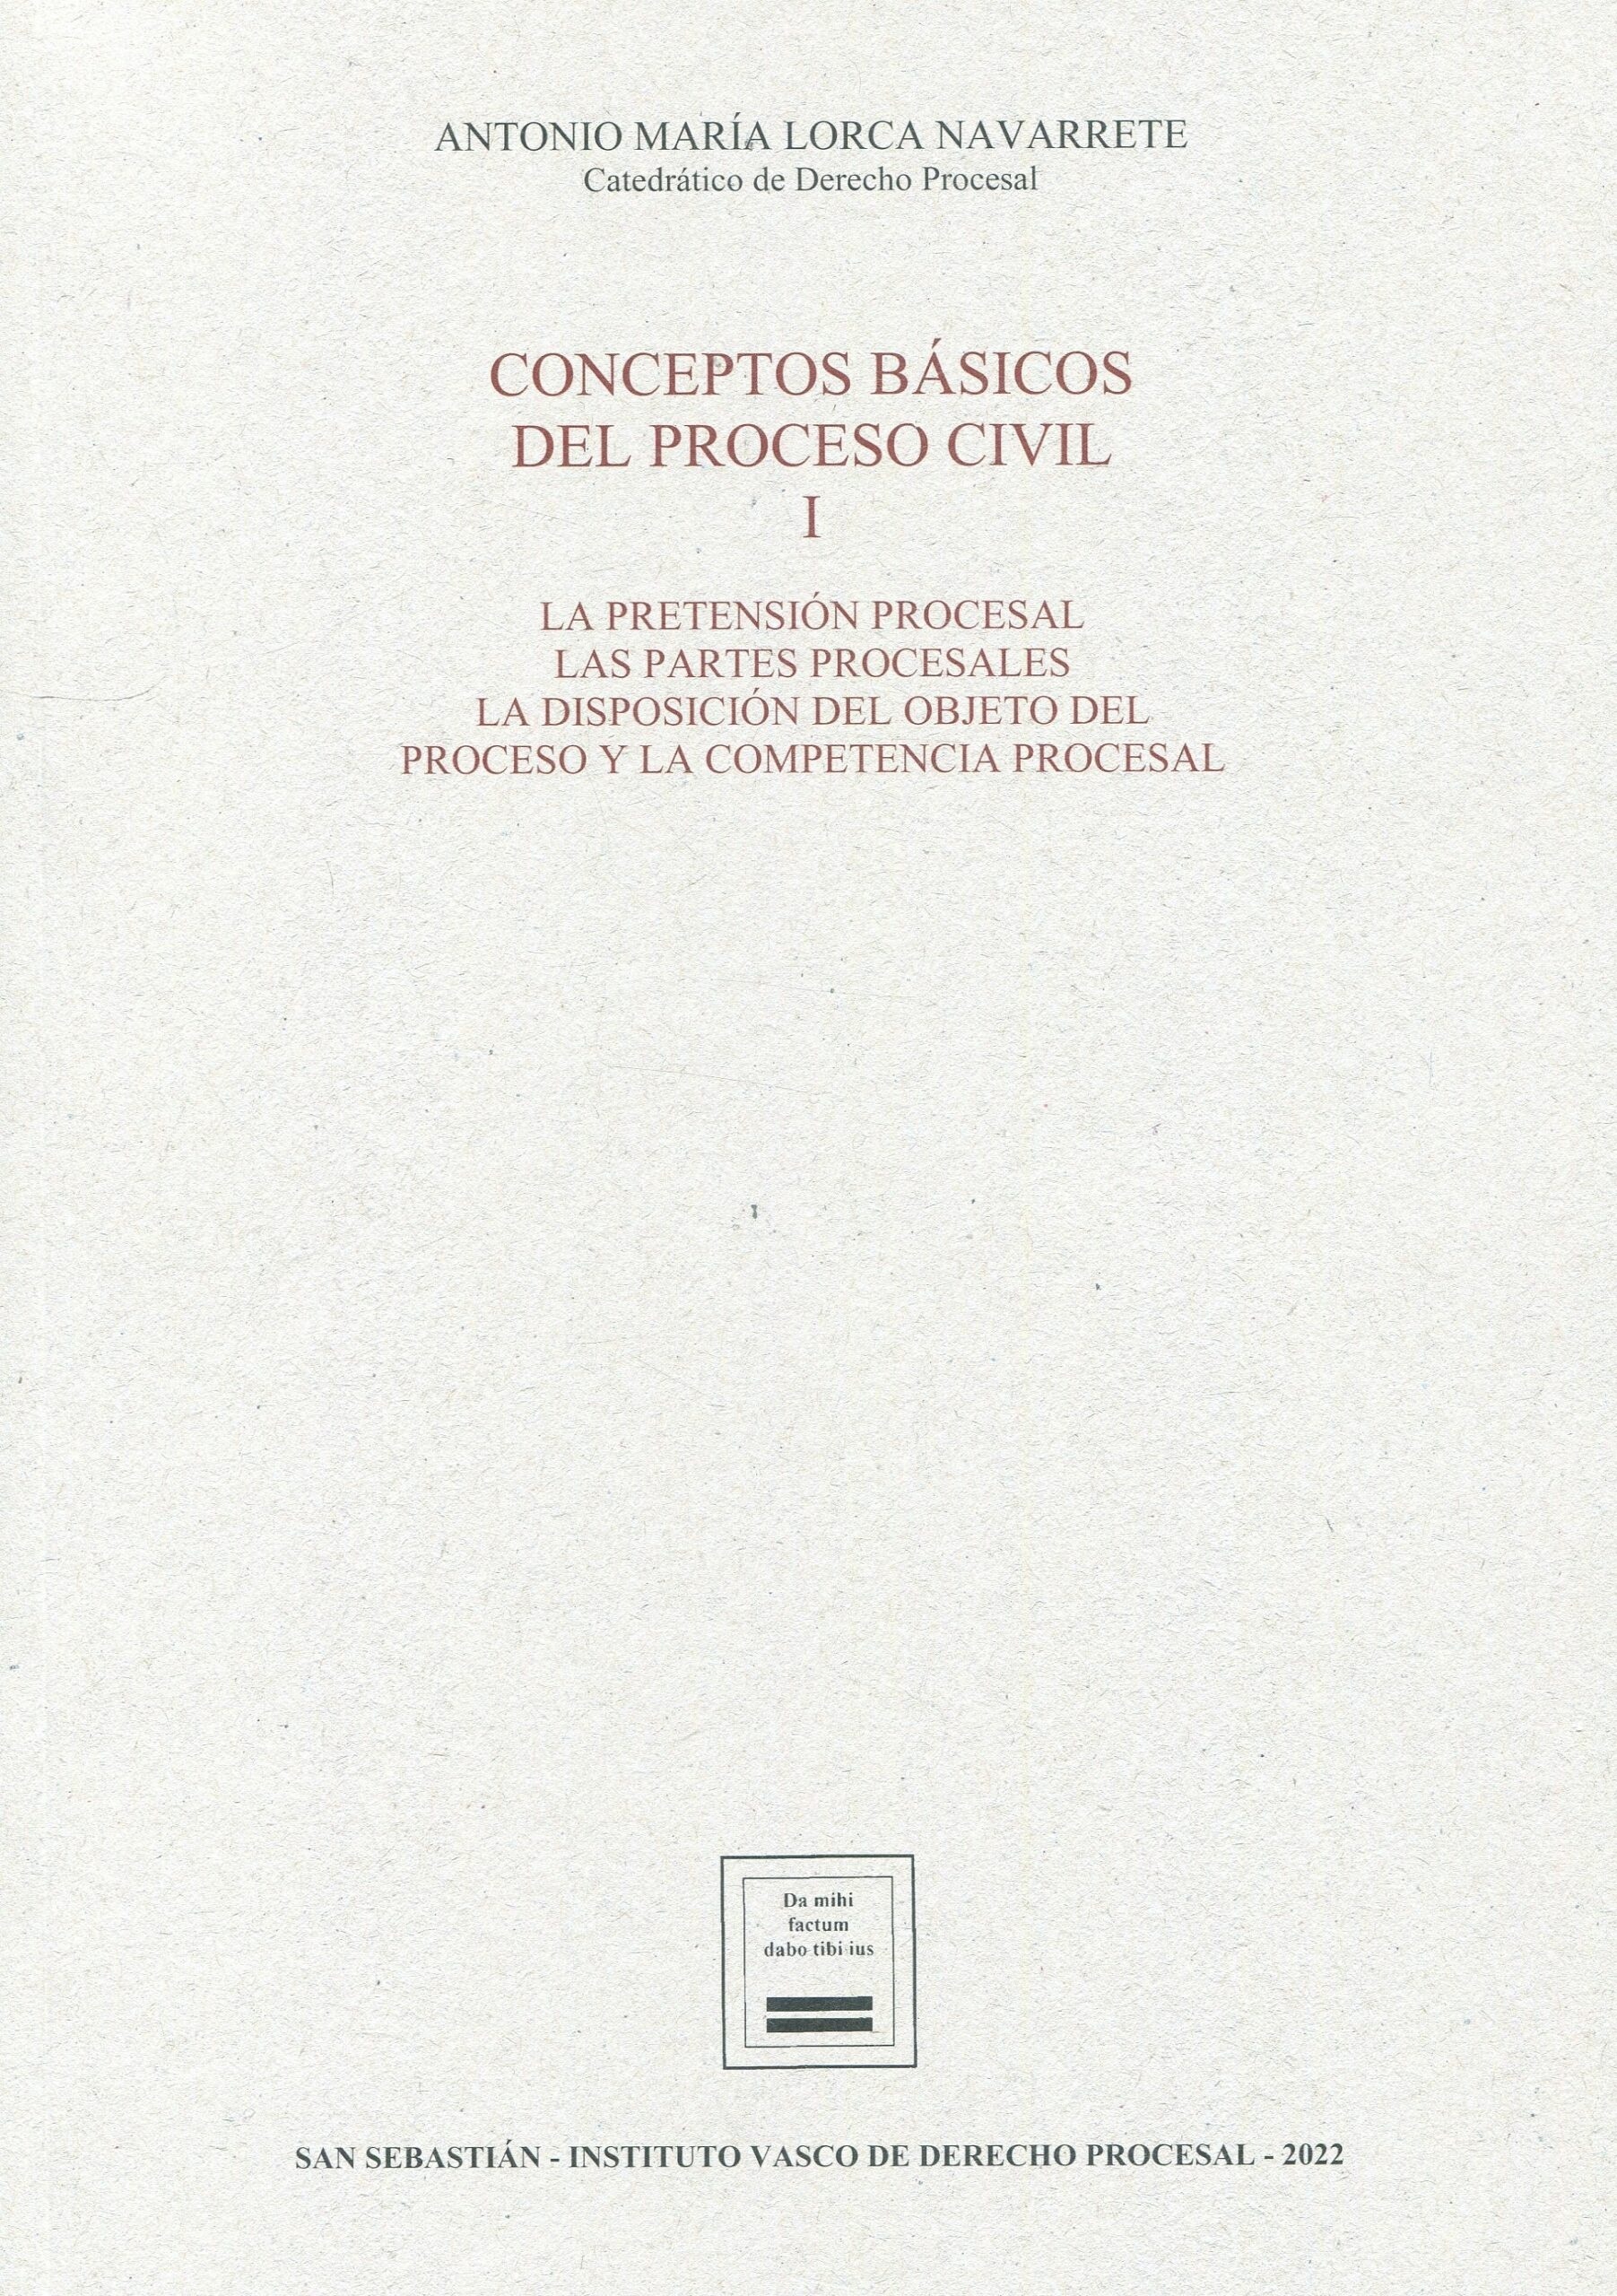 Conceptos básicos del proceso civil. Vol.I "La pretensión procesal. Las partes procesales. La disposición del objeto del proceso y la competencia procesal"